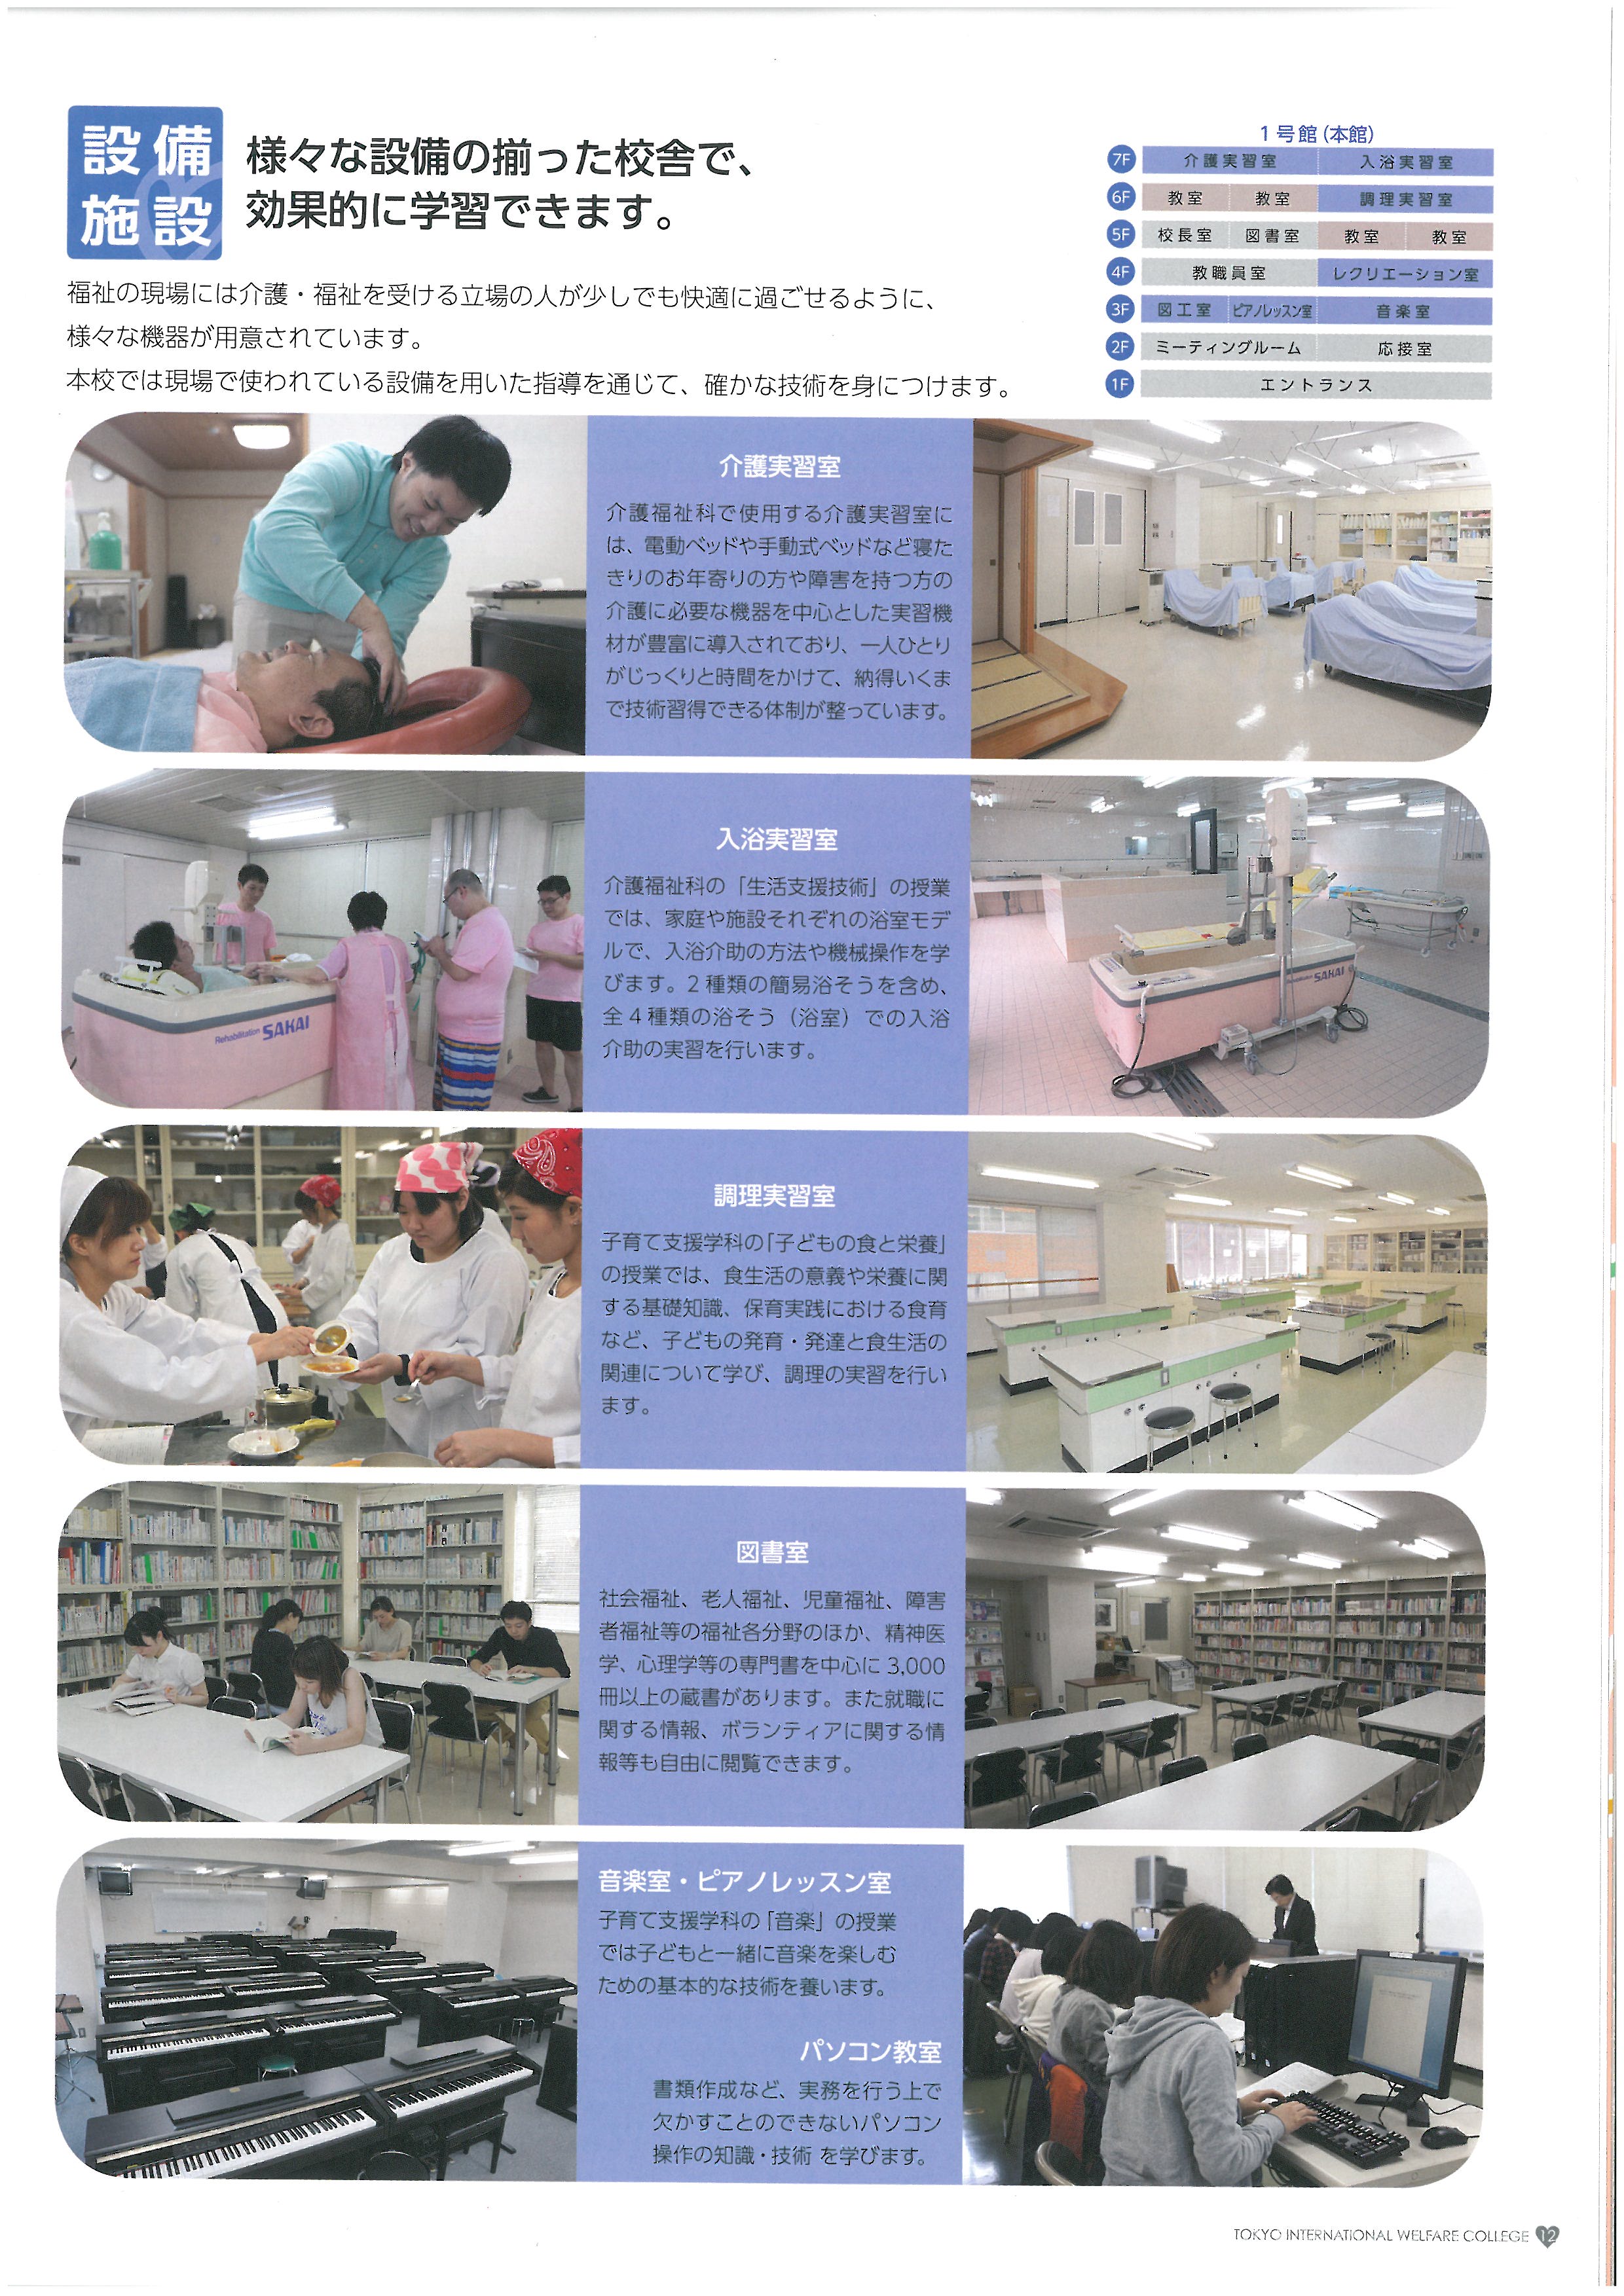 도쿄 국제복지전문학교 홍보 팜플렛 13.jpg